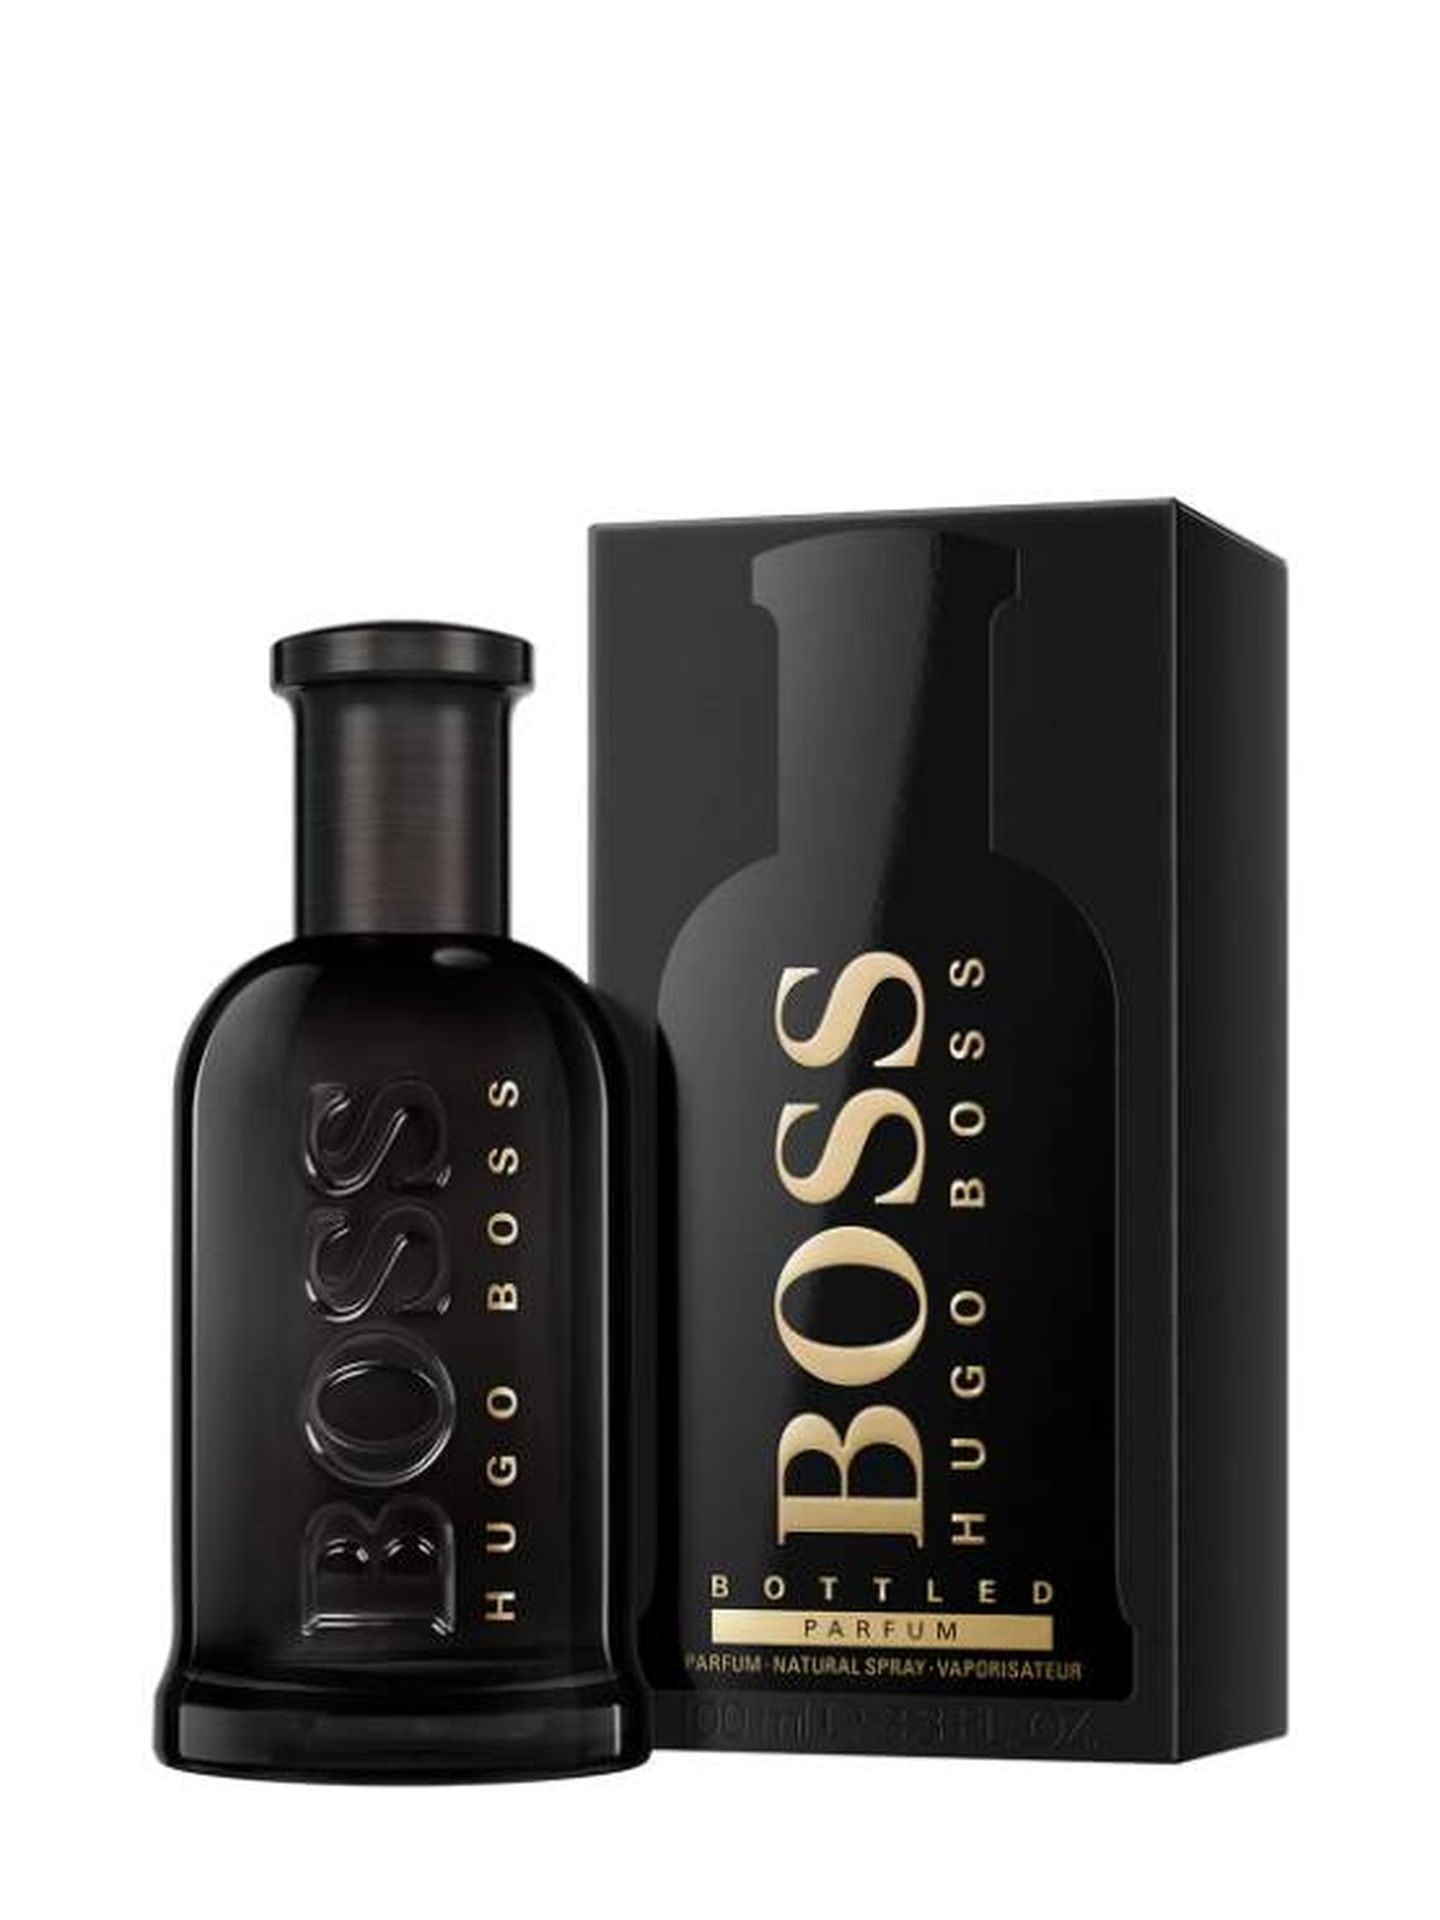 Boss Bottled, de Hugo Boss. (Cortesía)